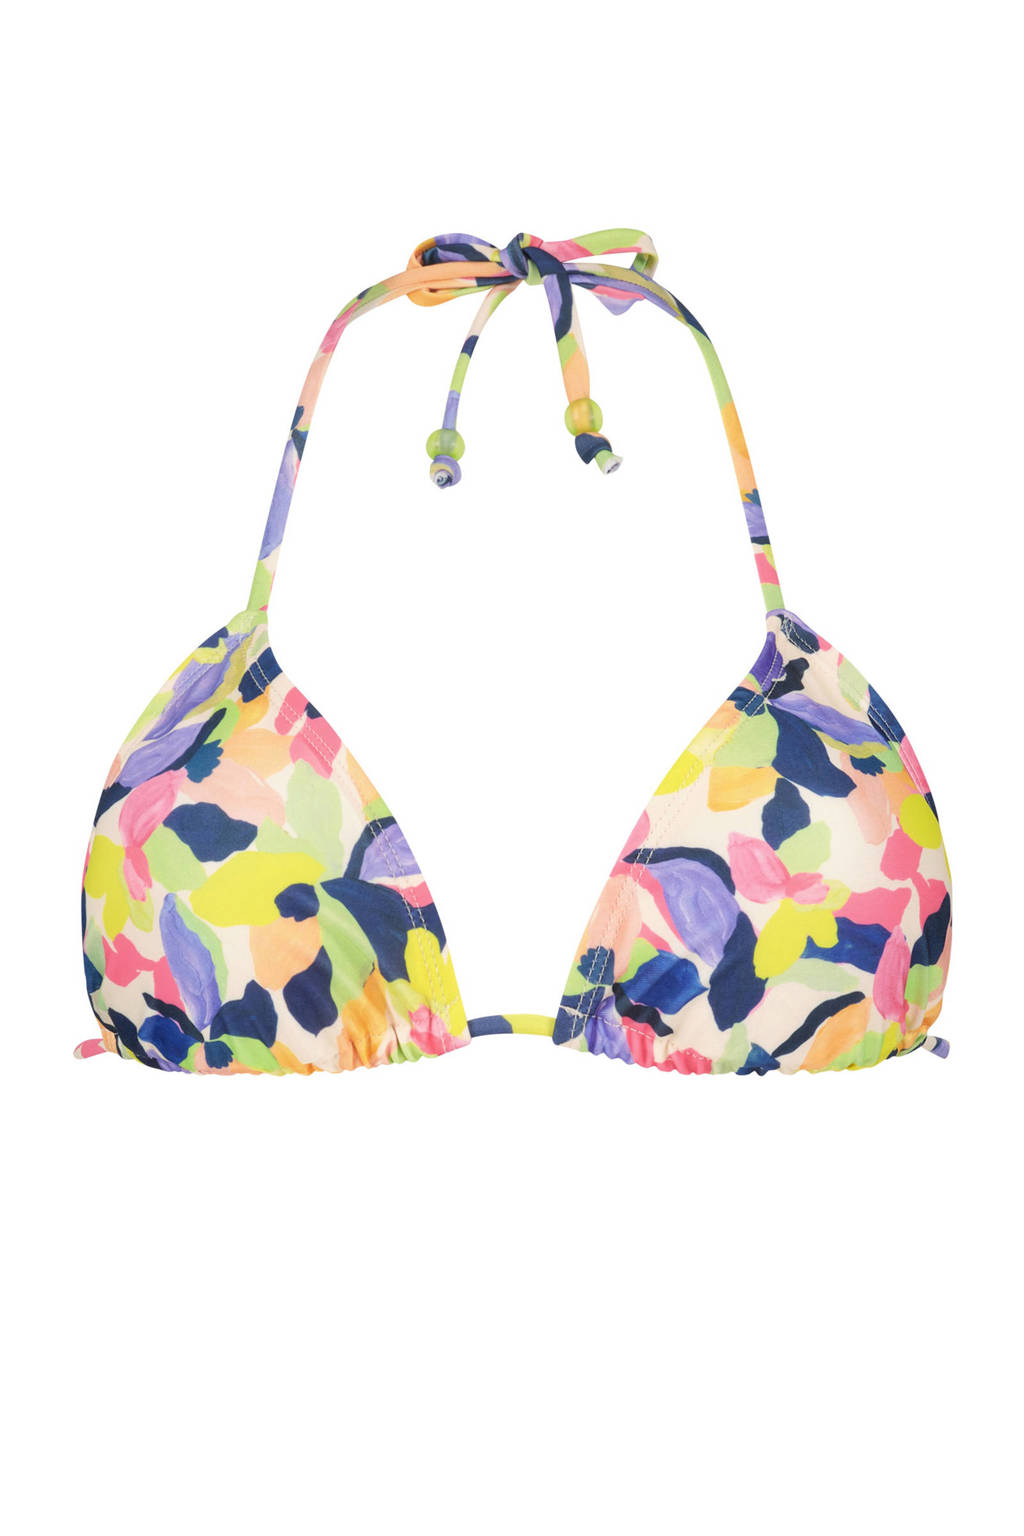 Hunkemöller triangel bikinitop Hawaii geel/paars/roze